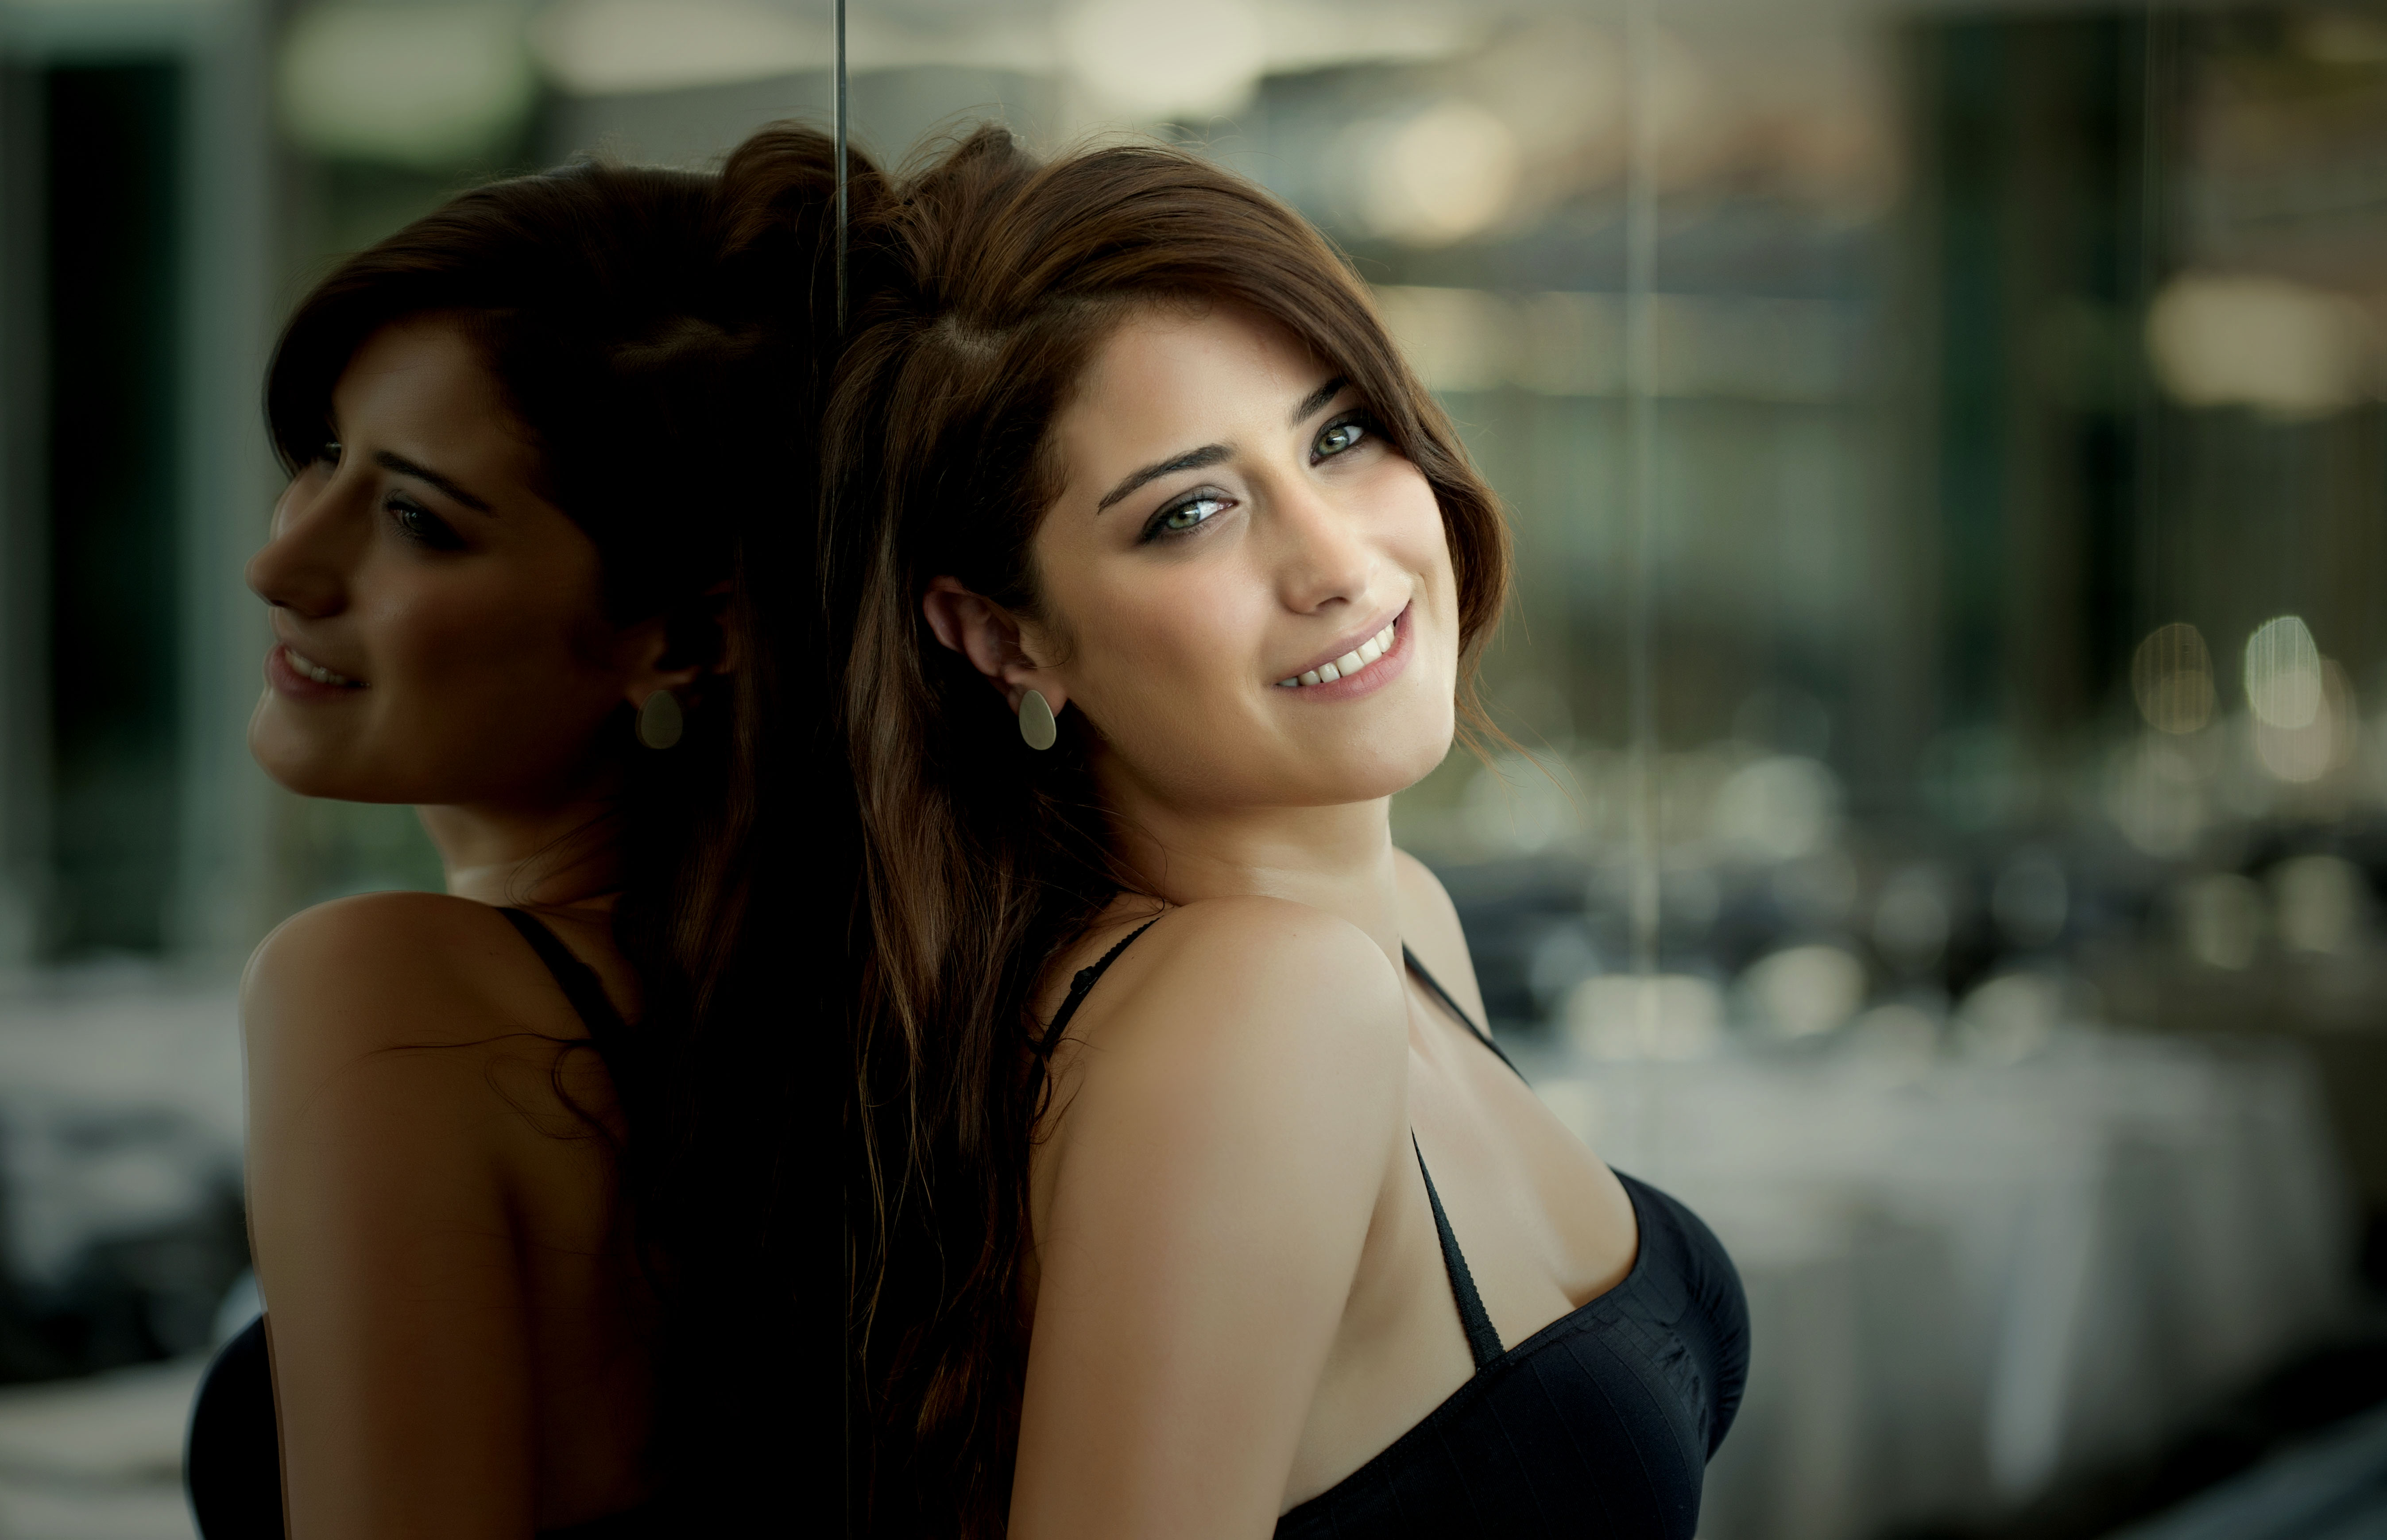 Hazal Kaya Brunette Women Actress Turkish Actress Turkish Smiling Reflection Turkish Celebrity 5391x3479